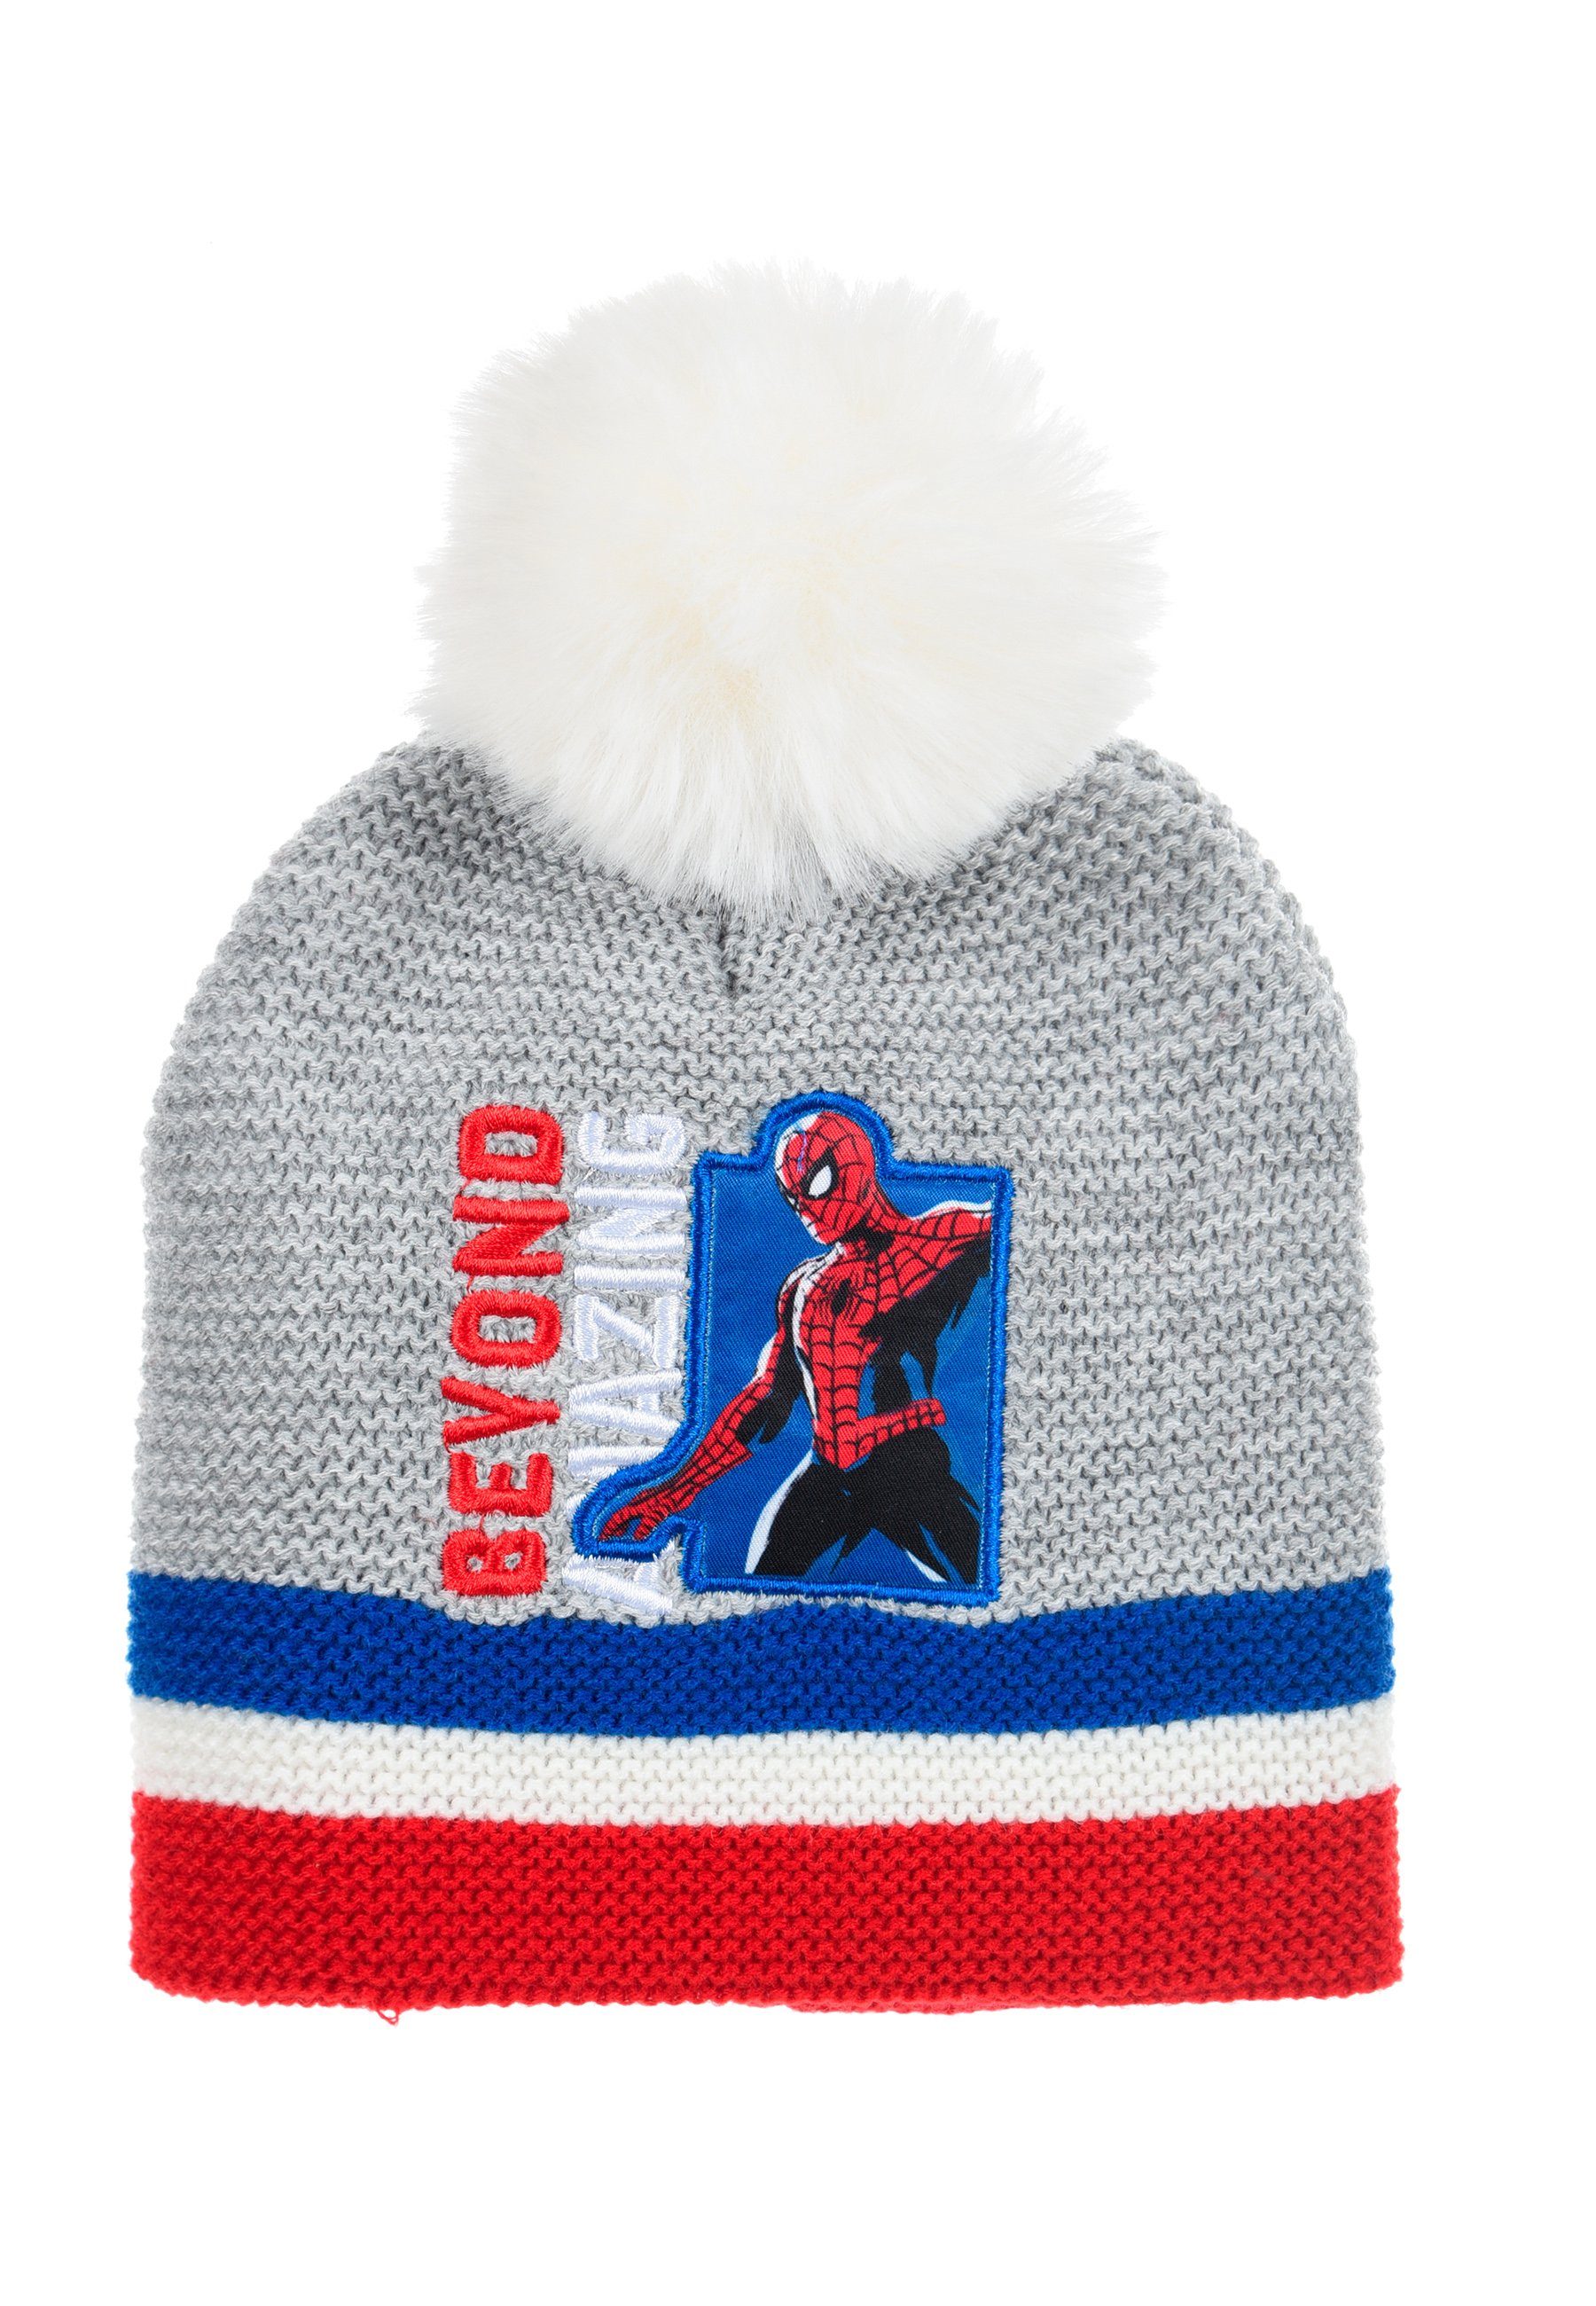 Grau Strickmützte Winter-Bommel-Mütze Bommelmütze Jungen Spiderman Kinder